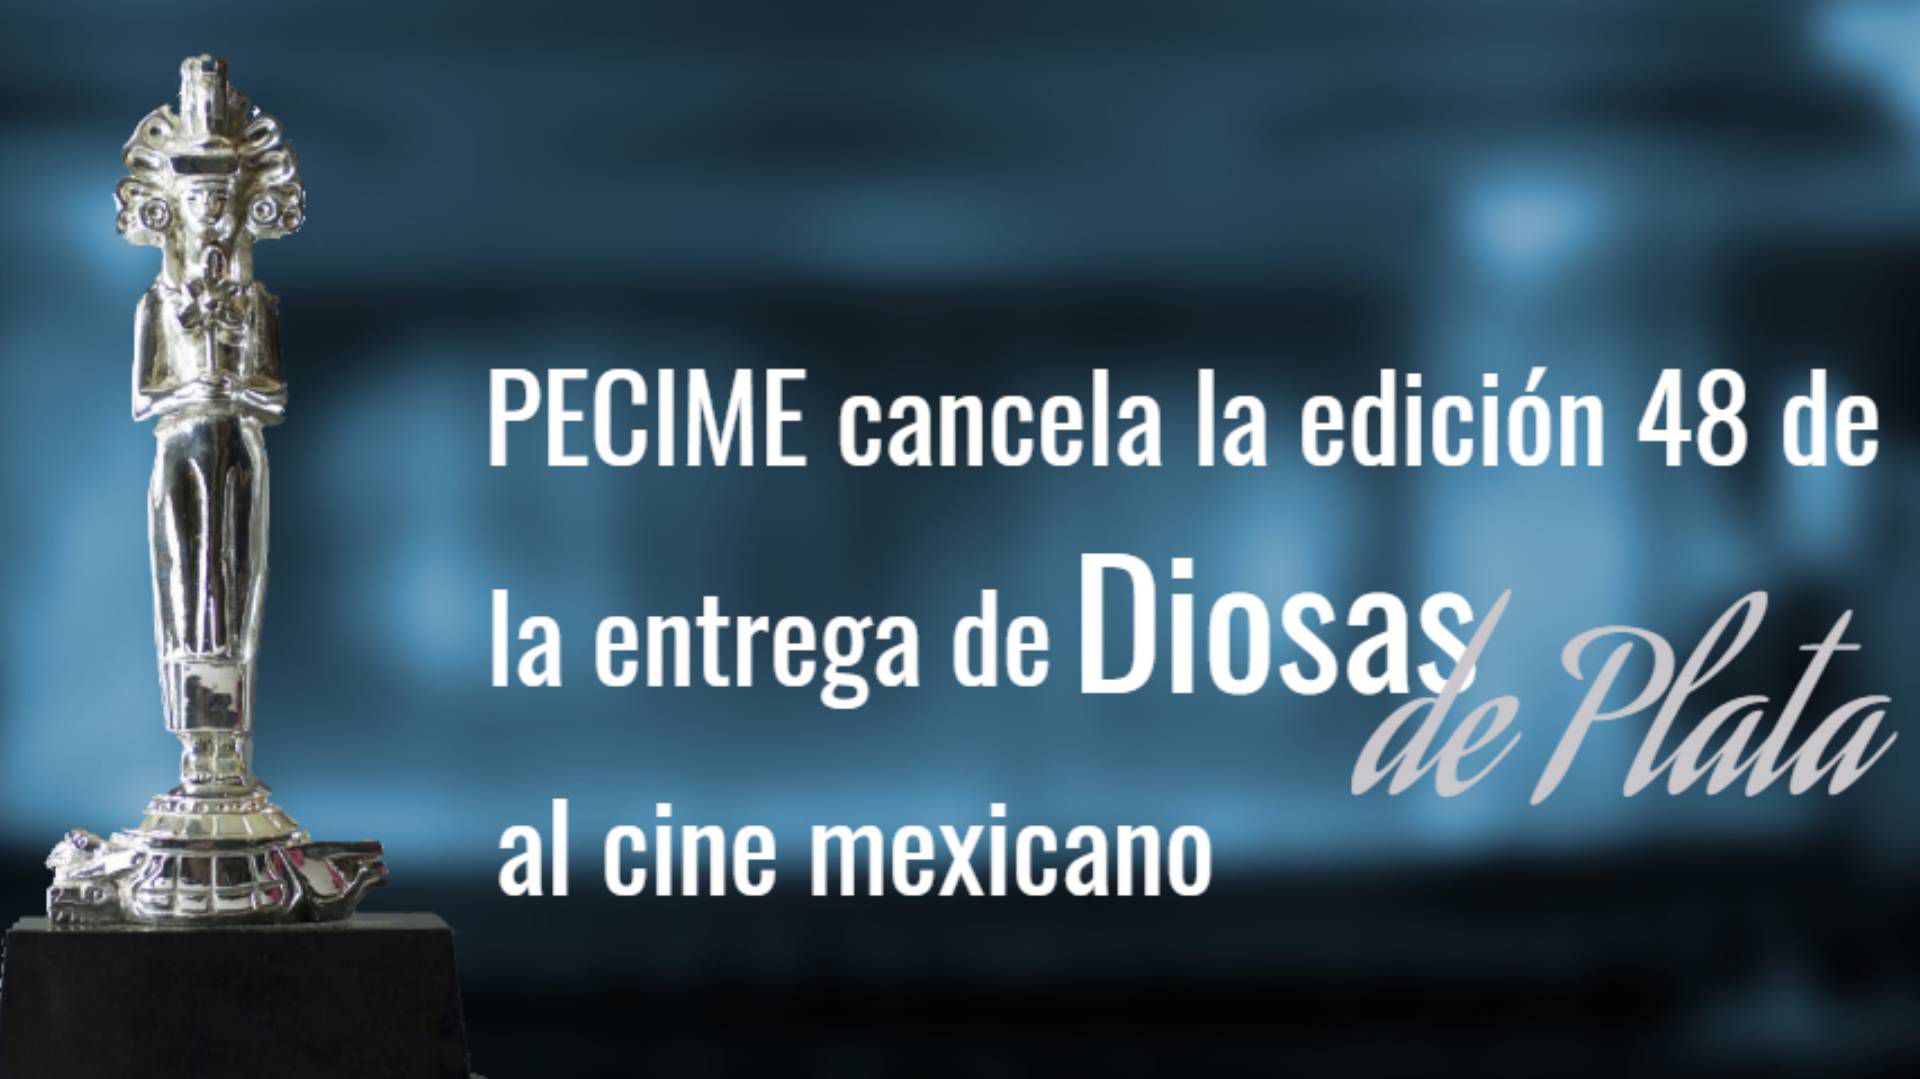 PECIME anunció con tristeza la cancelación de la entrega número 48 de Diosas de Plata al cine mexicano